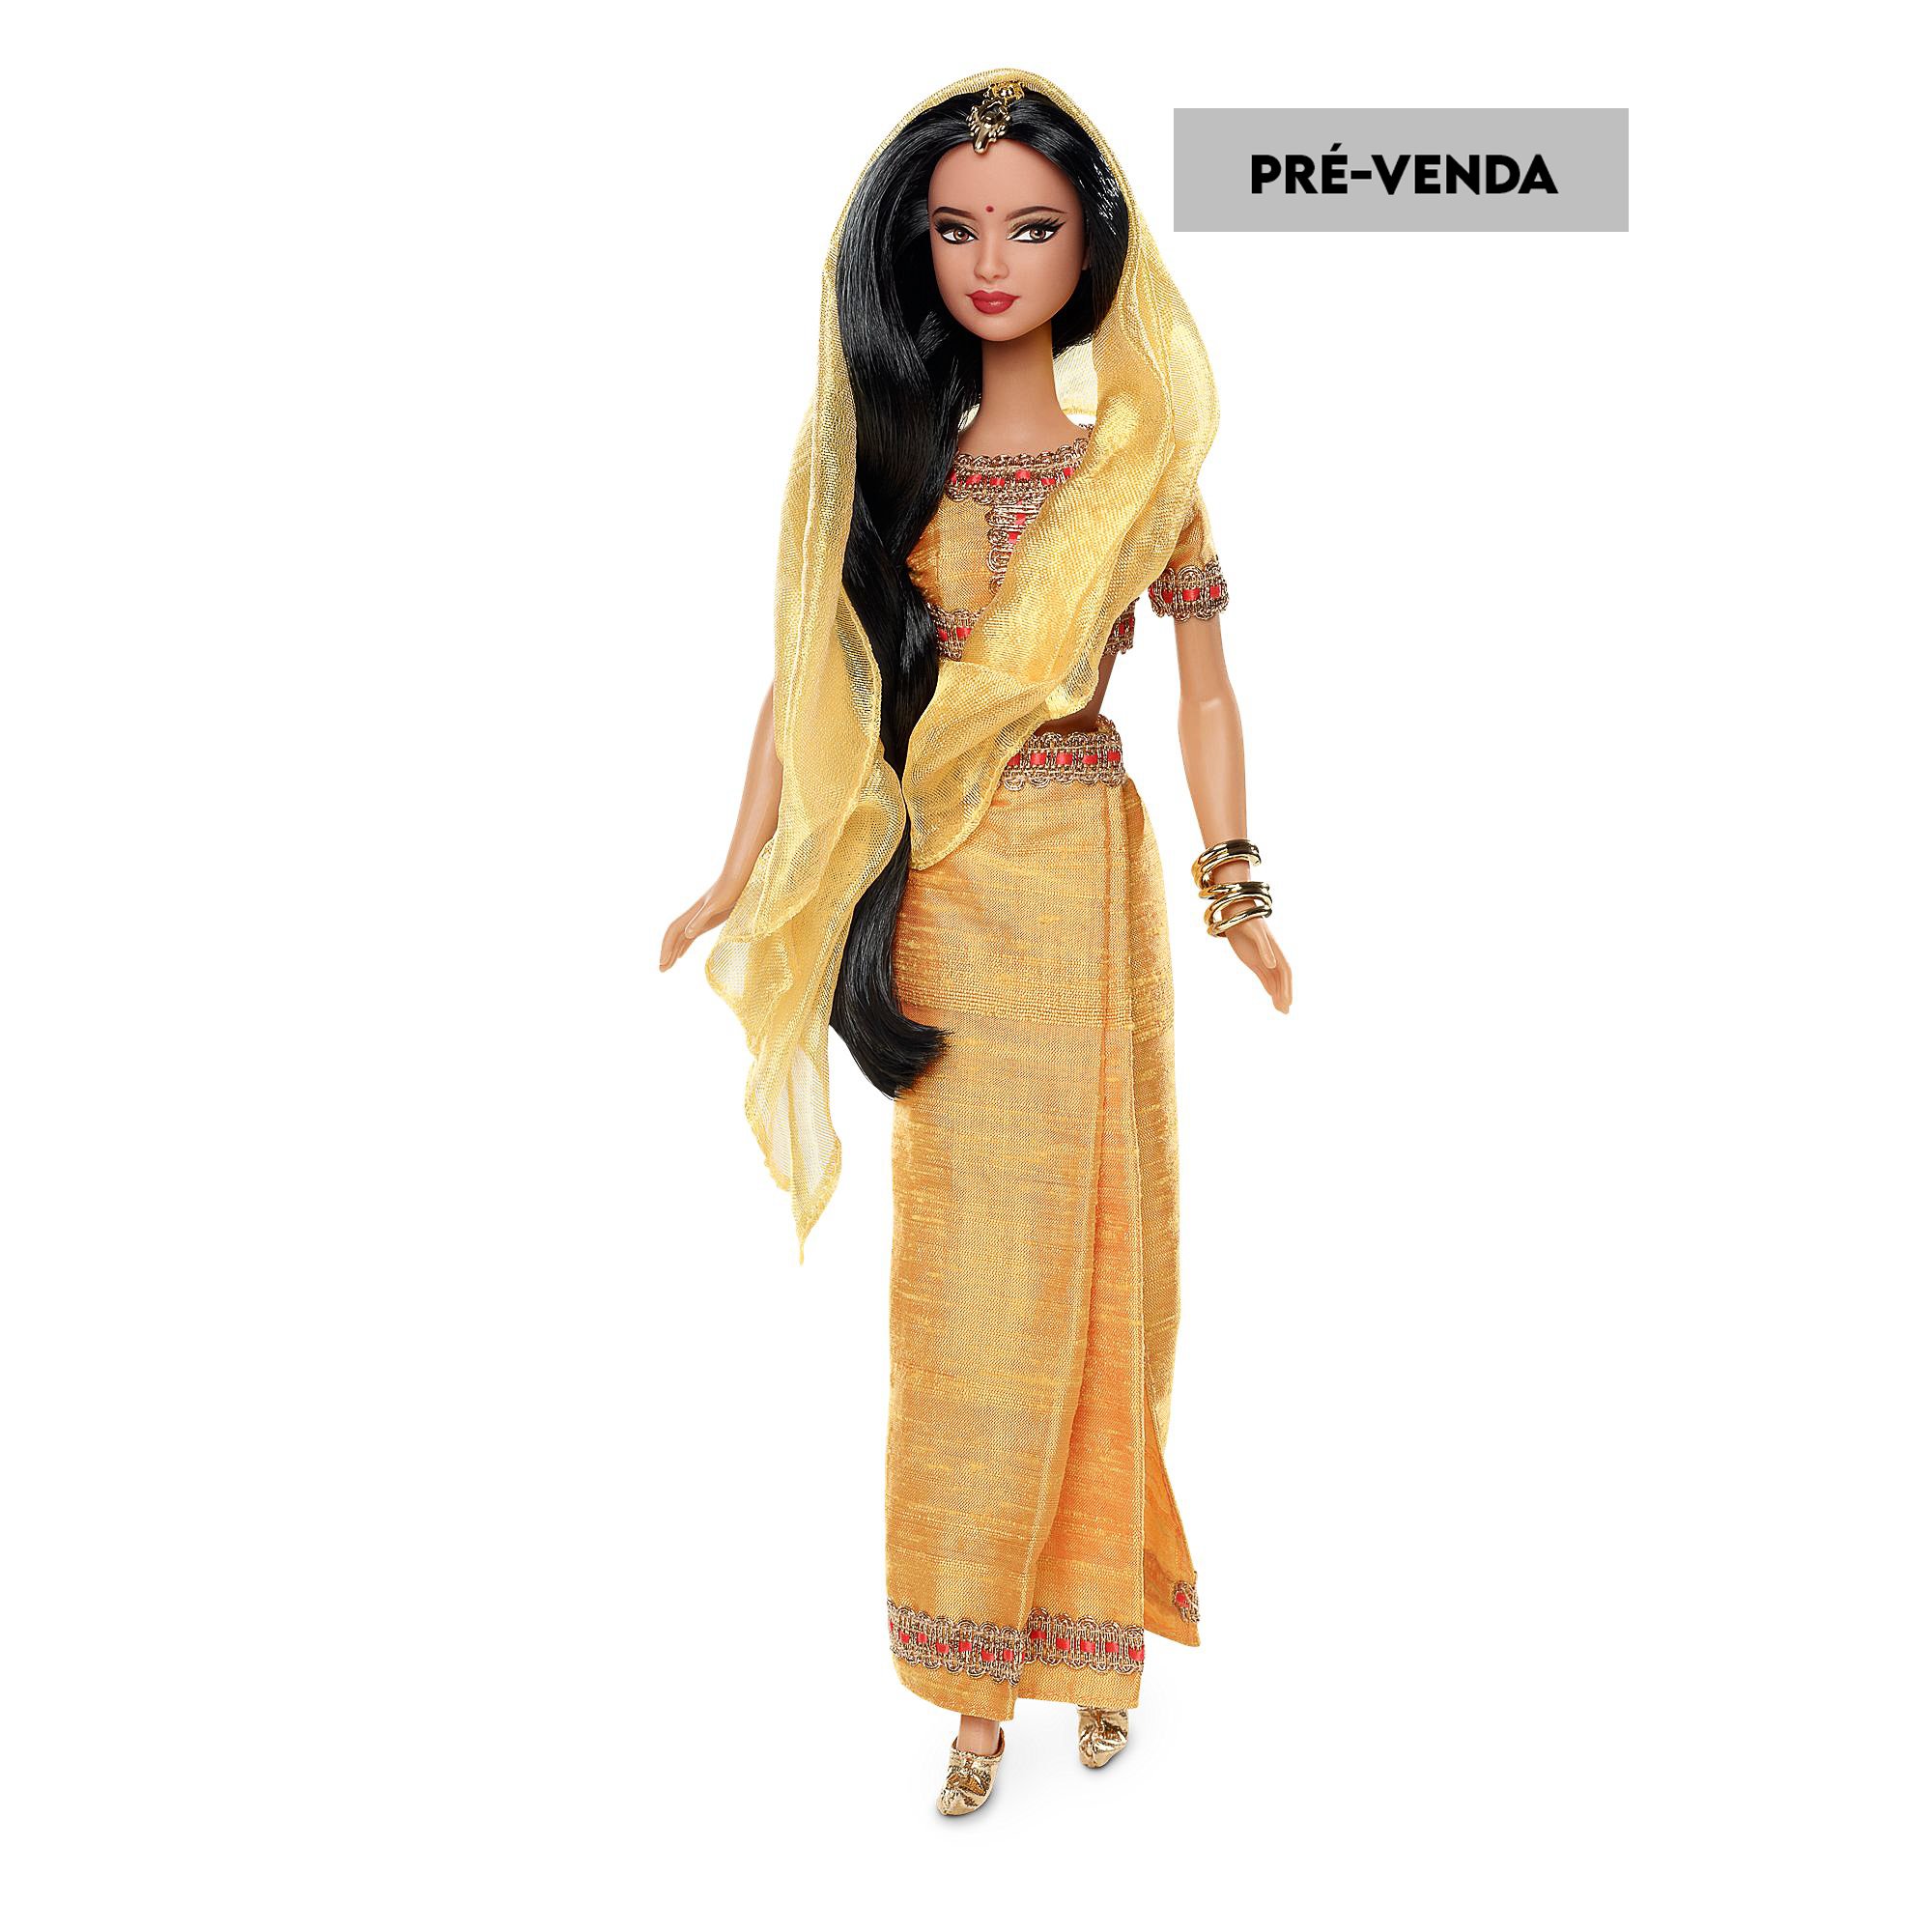 Mattel Carnaval Barbie Doll Festivals of the World DotW India